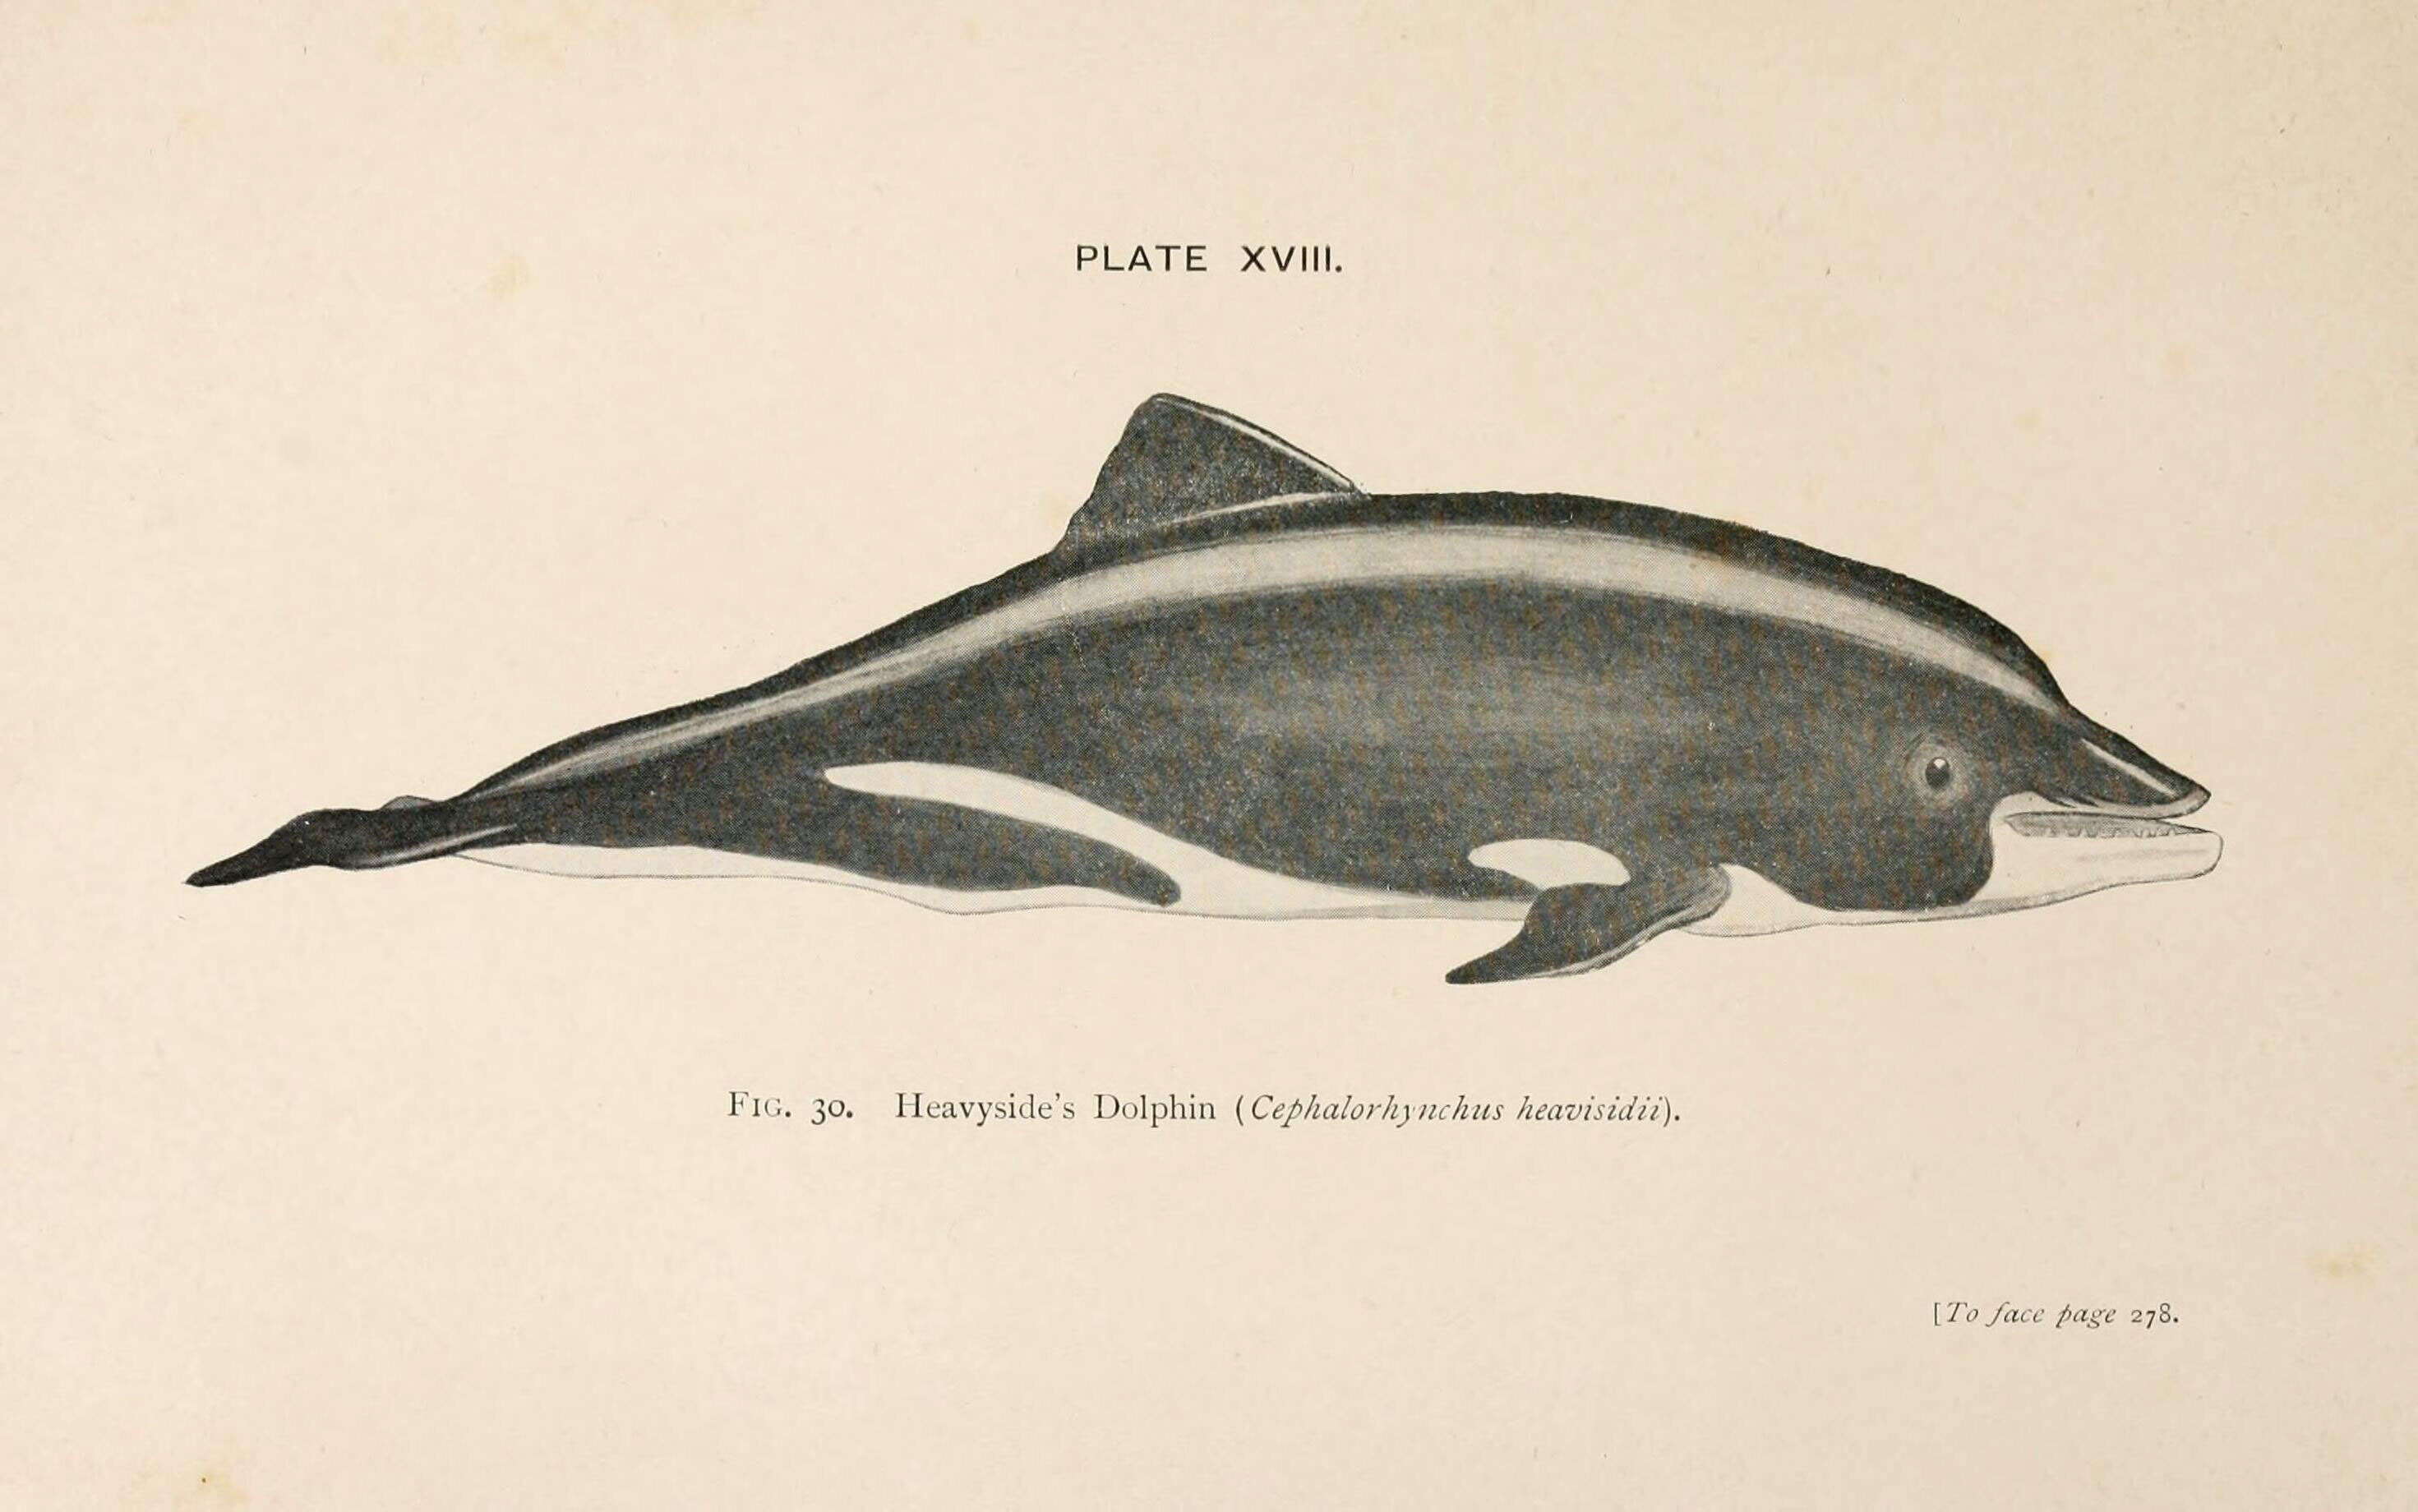 Image of Benguela Dolphin